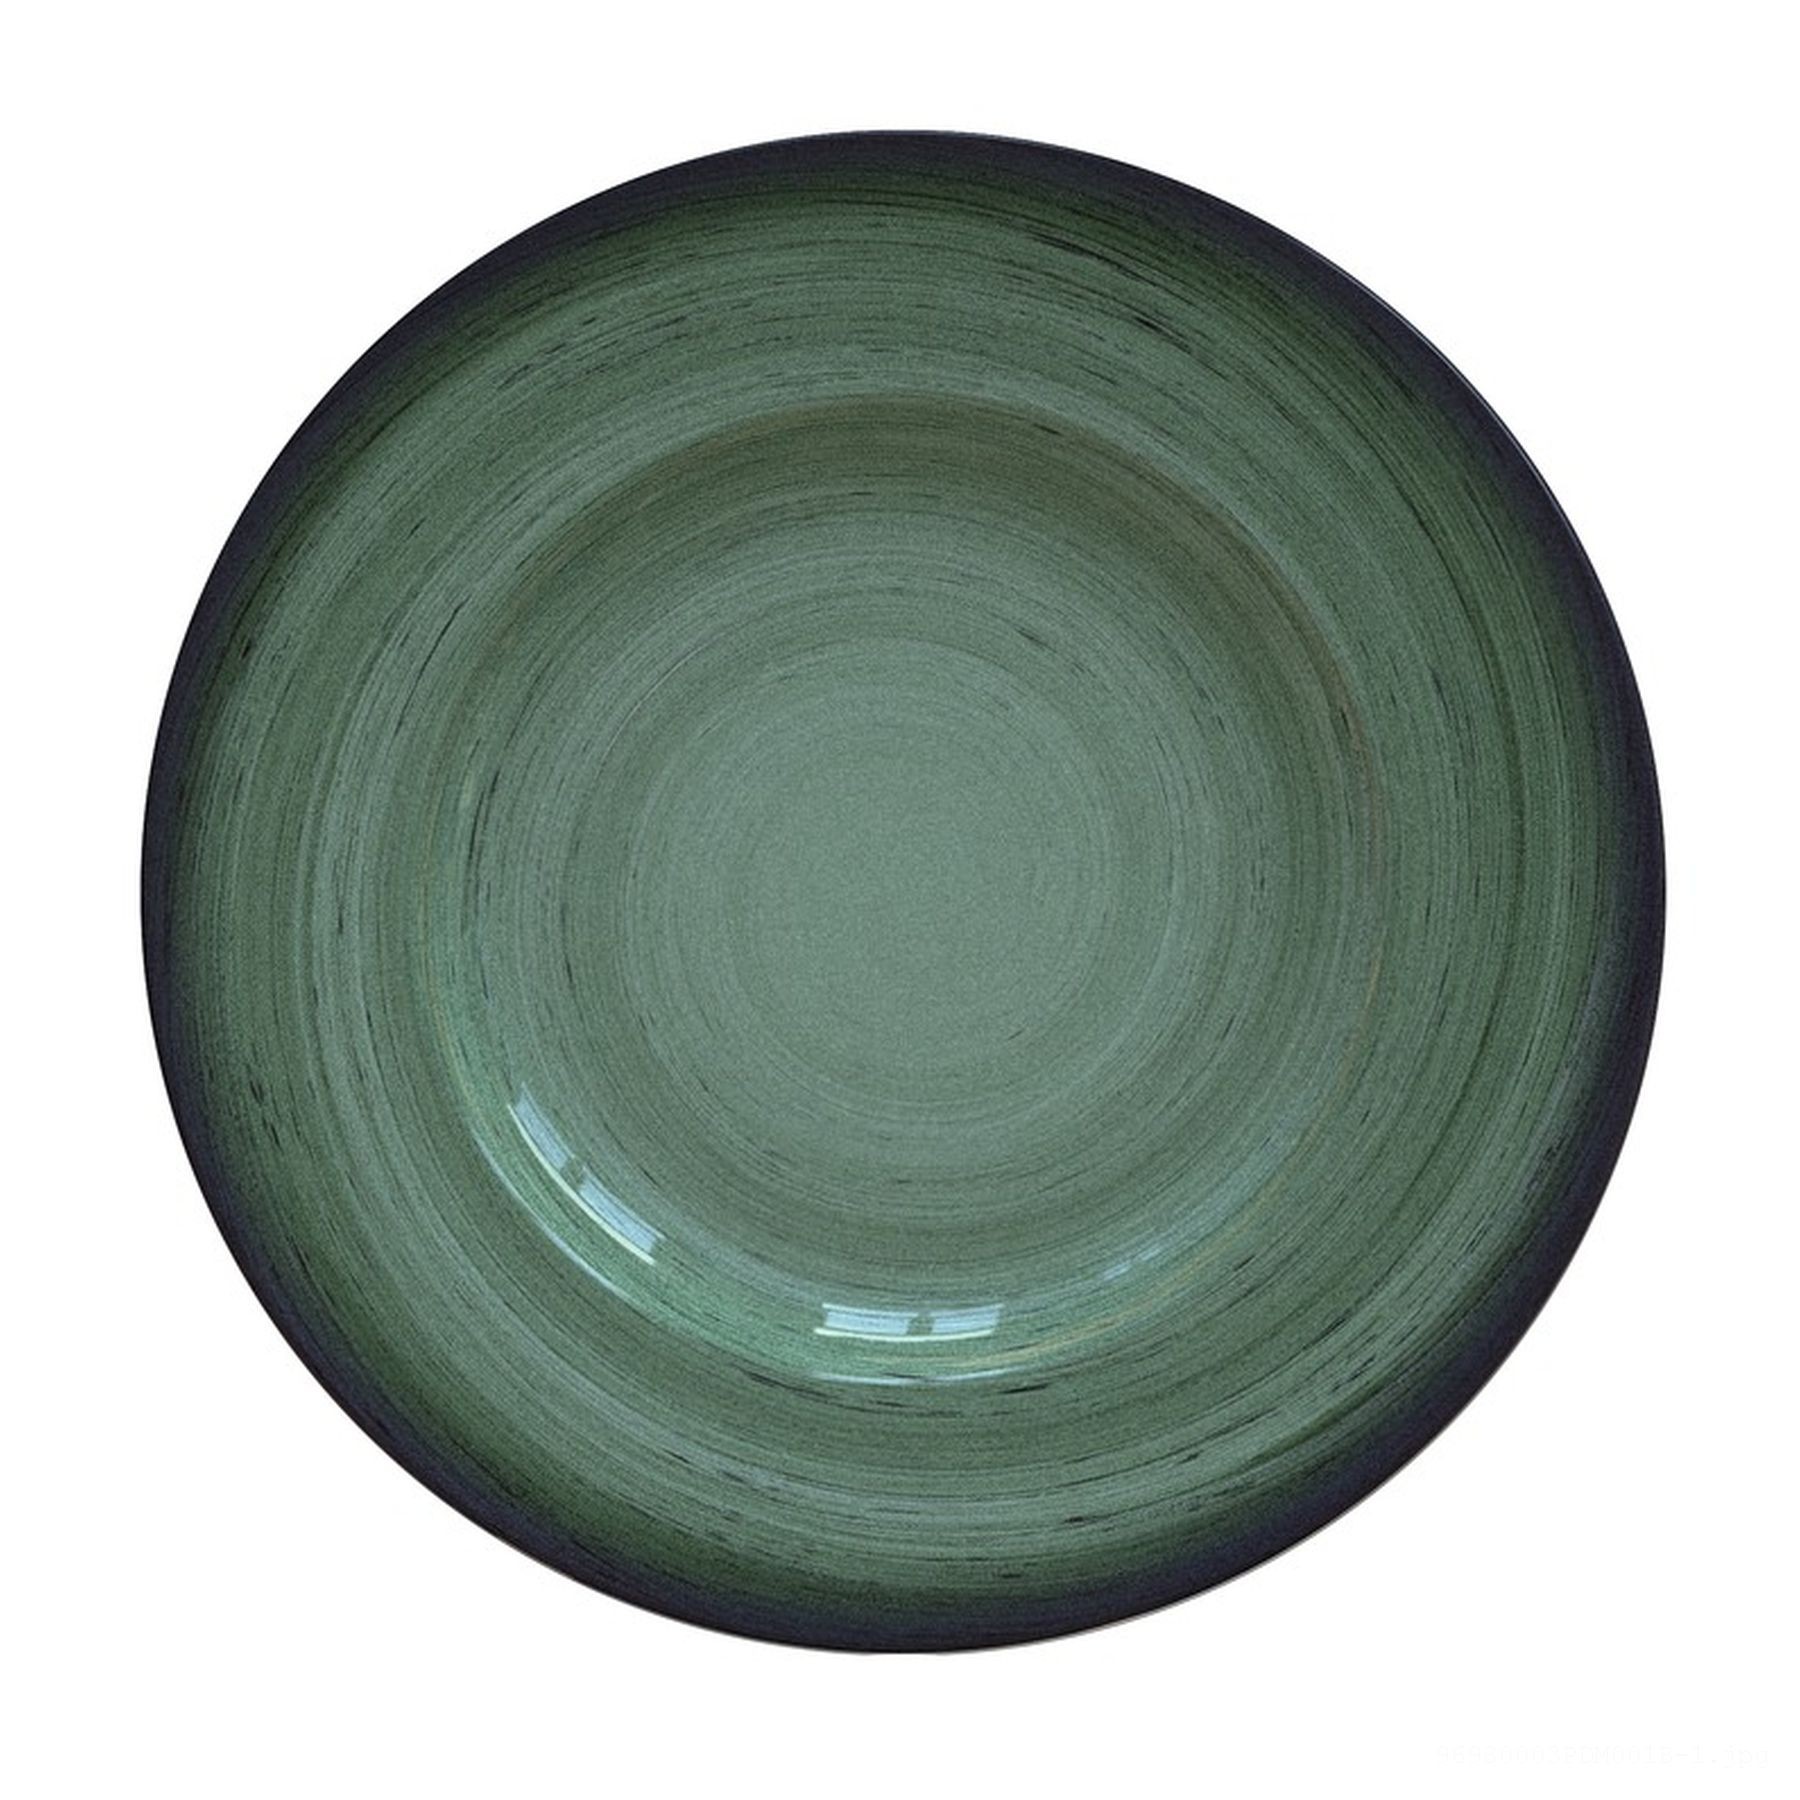 Prato Raso Rústico Verde em Porcelana Decorada 27 cm